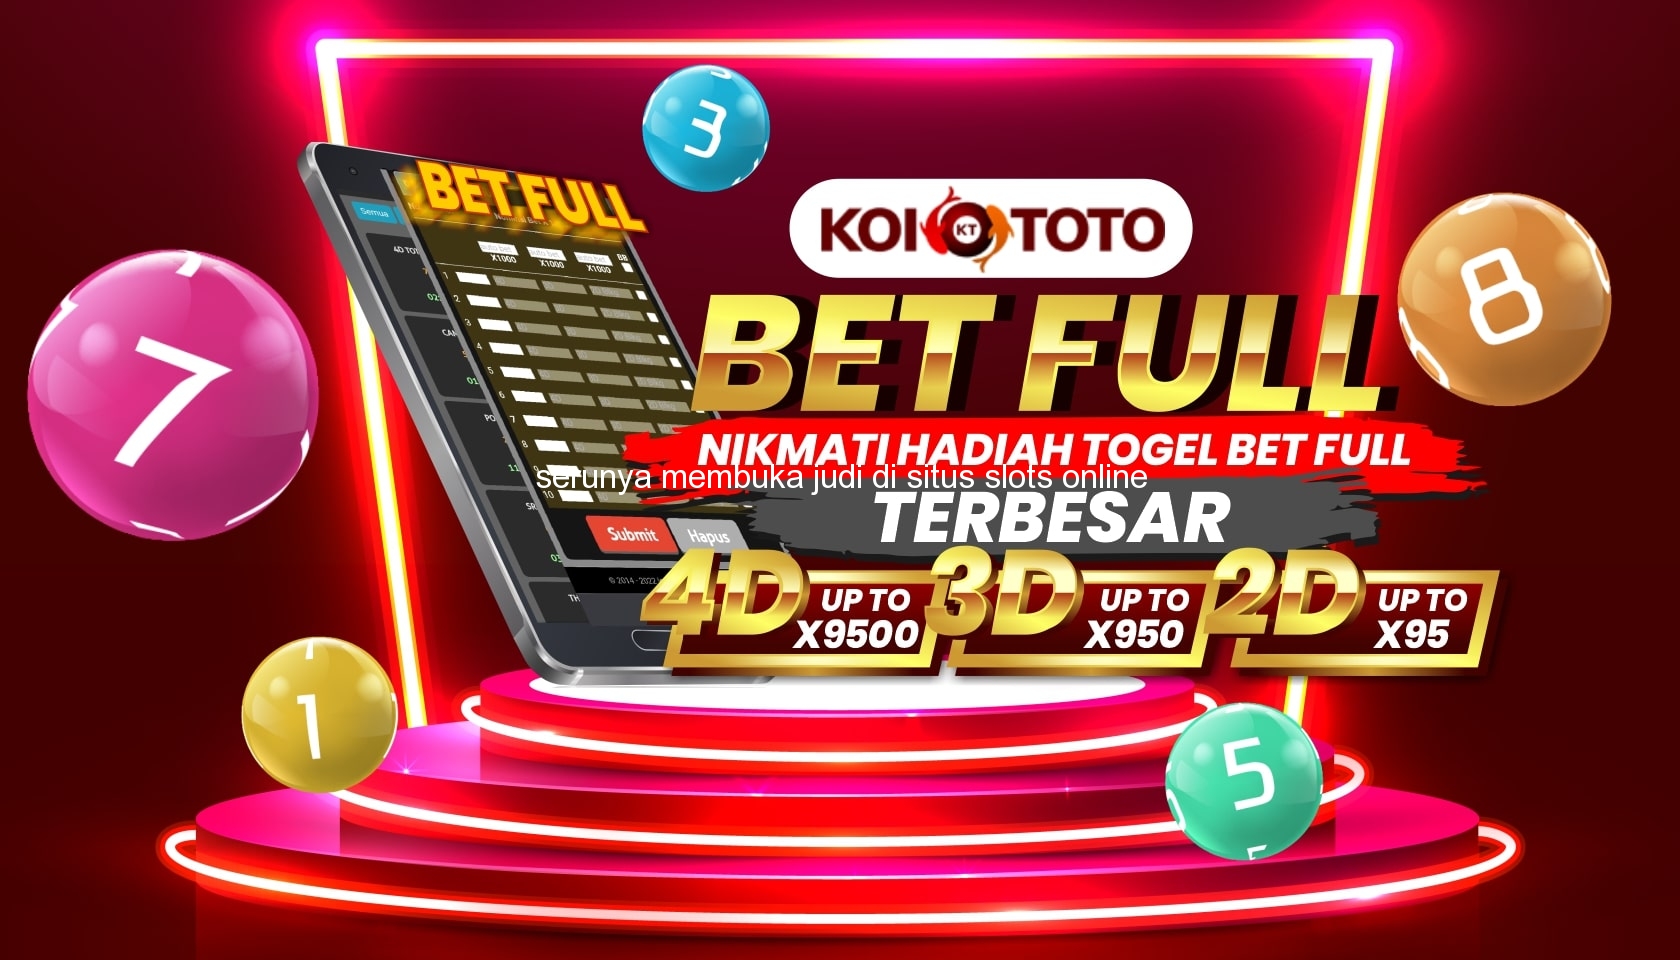 Serunya Membuka Judi di Situs Slots Online Terbaik di Insana Utara – KOITOTO